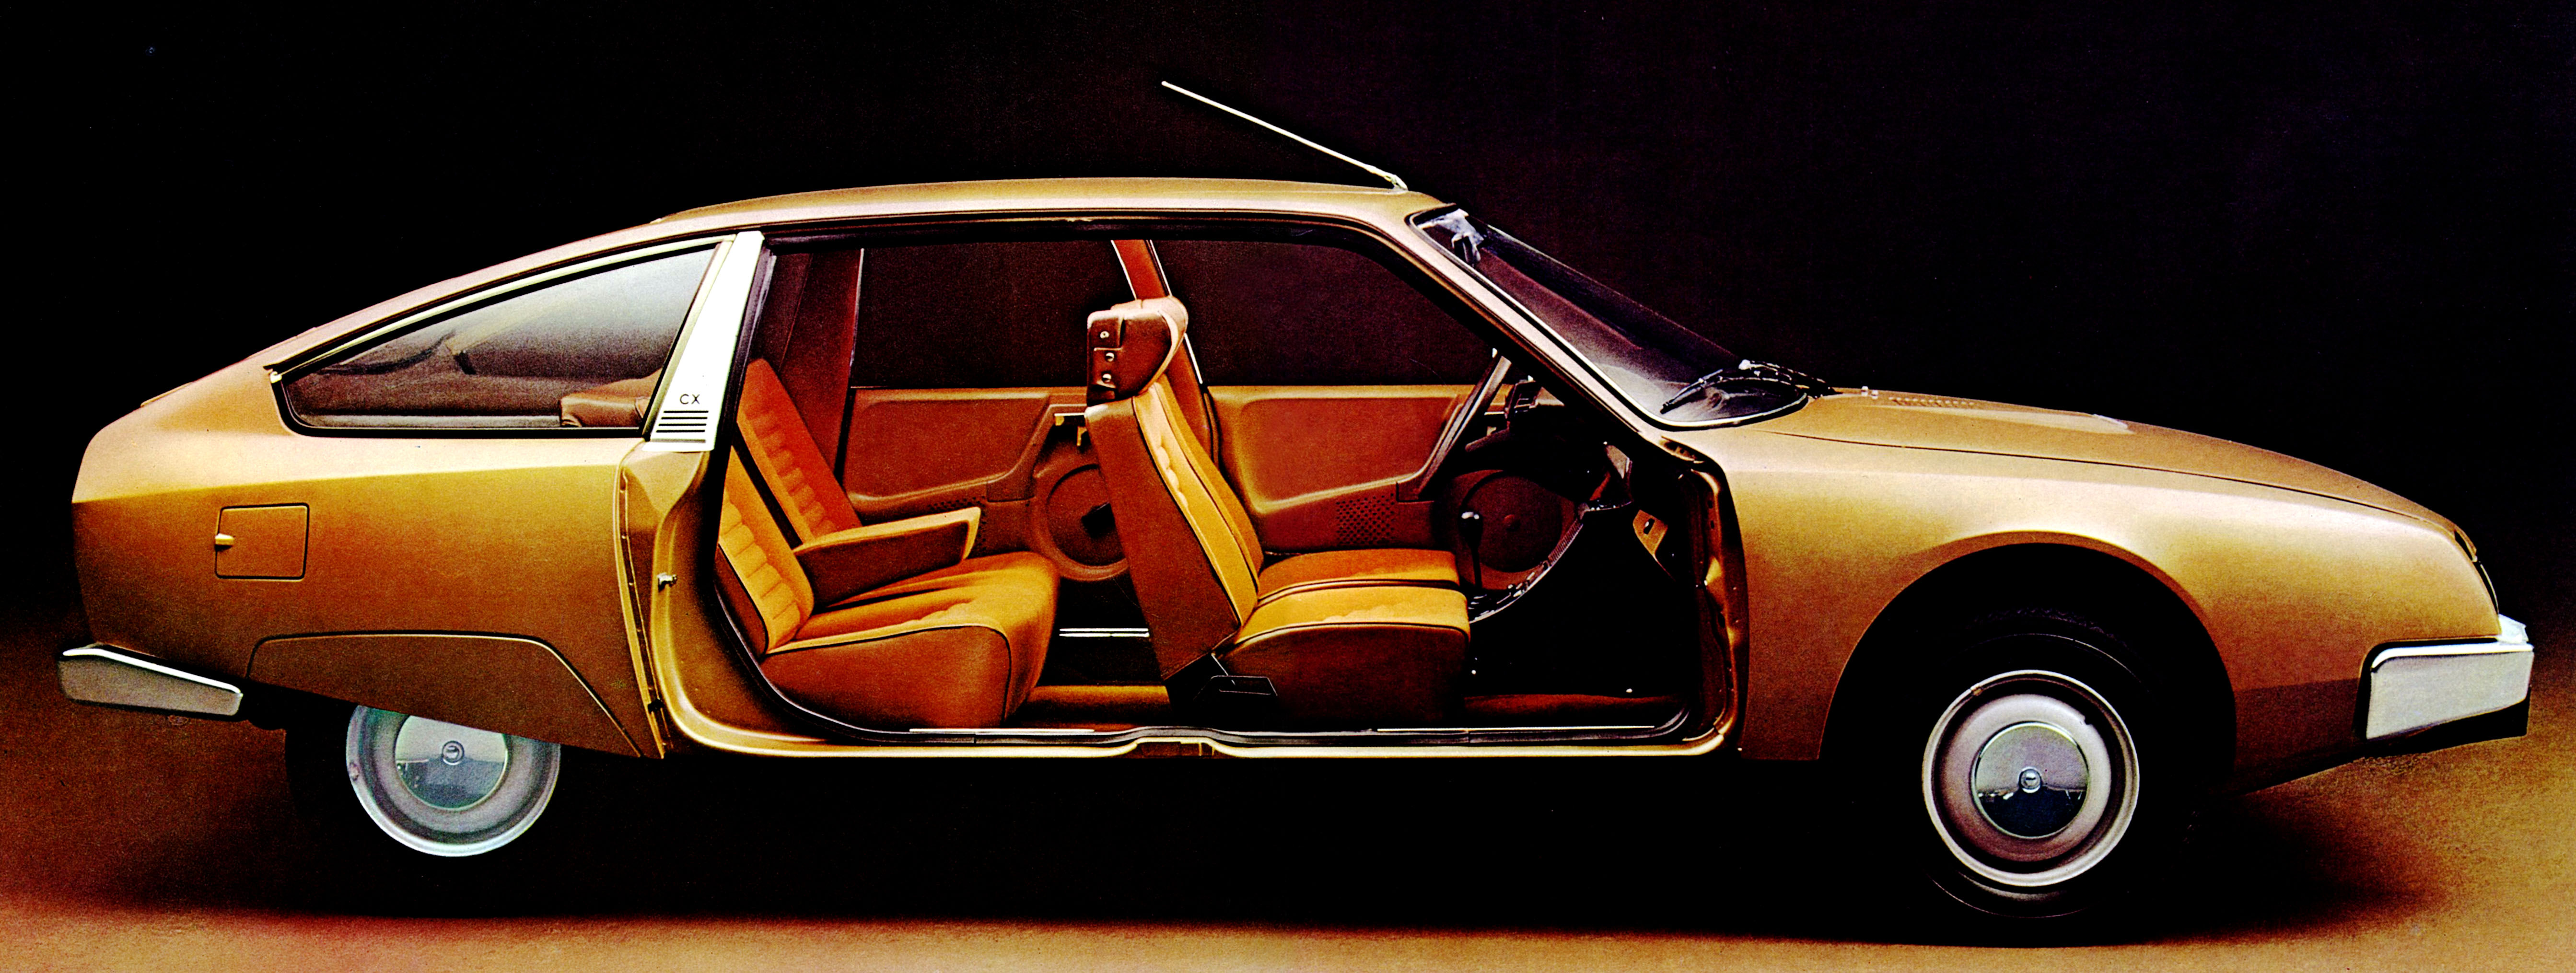 1974 Citroen CX brochure